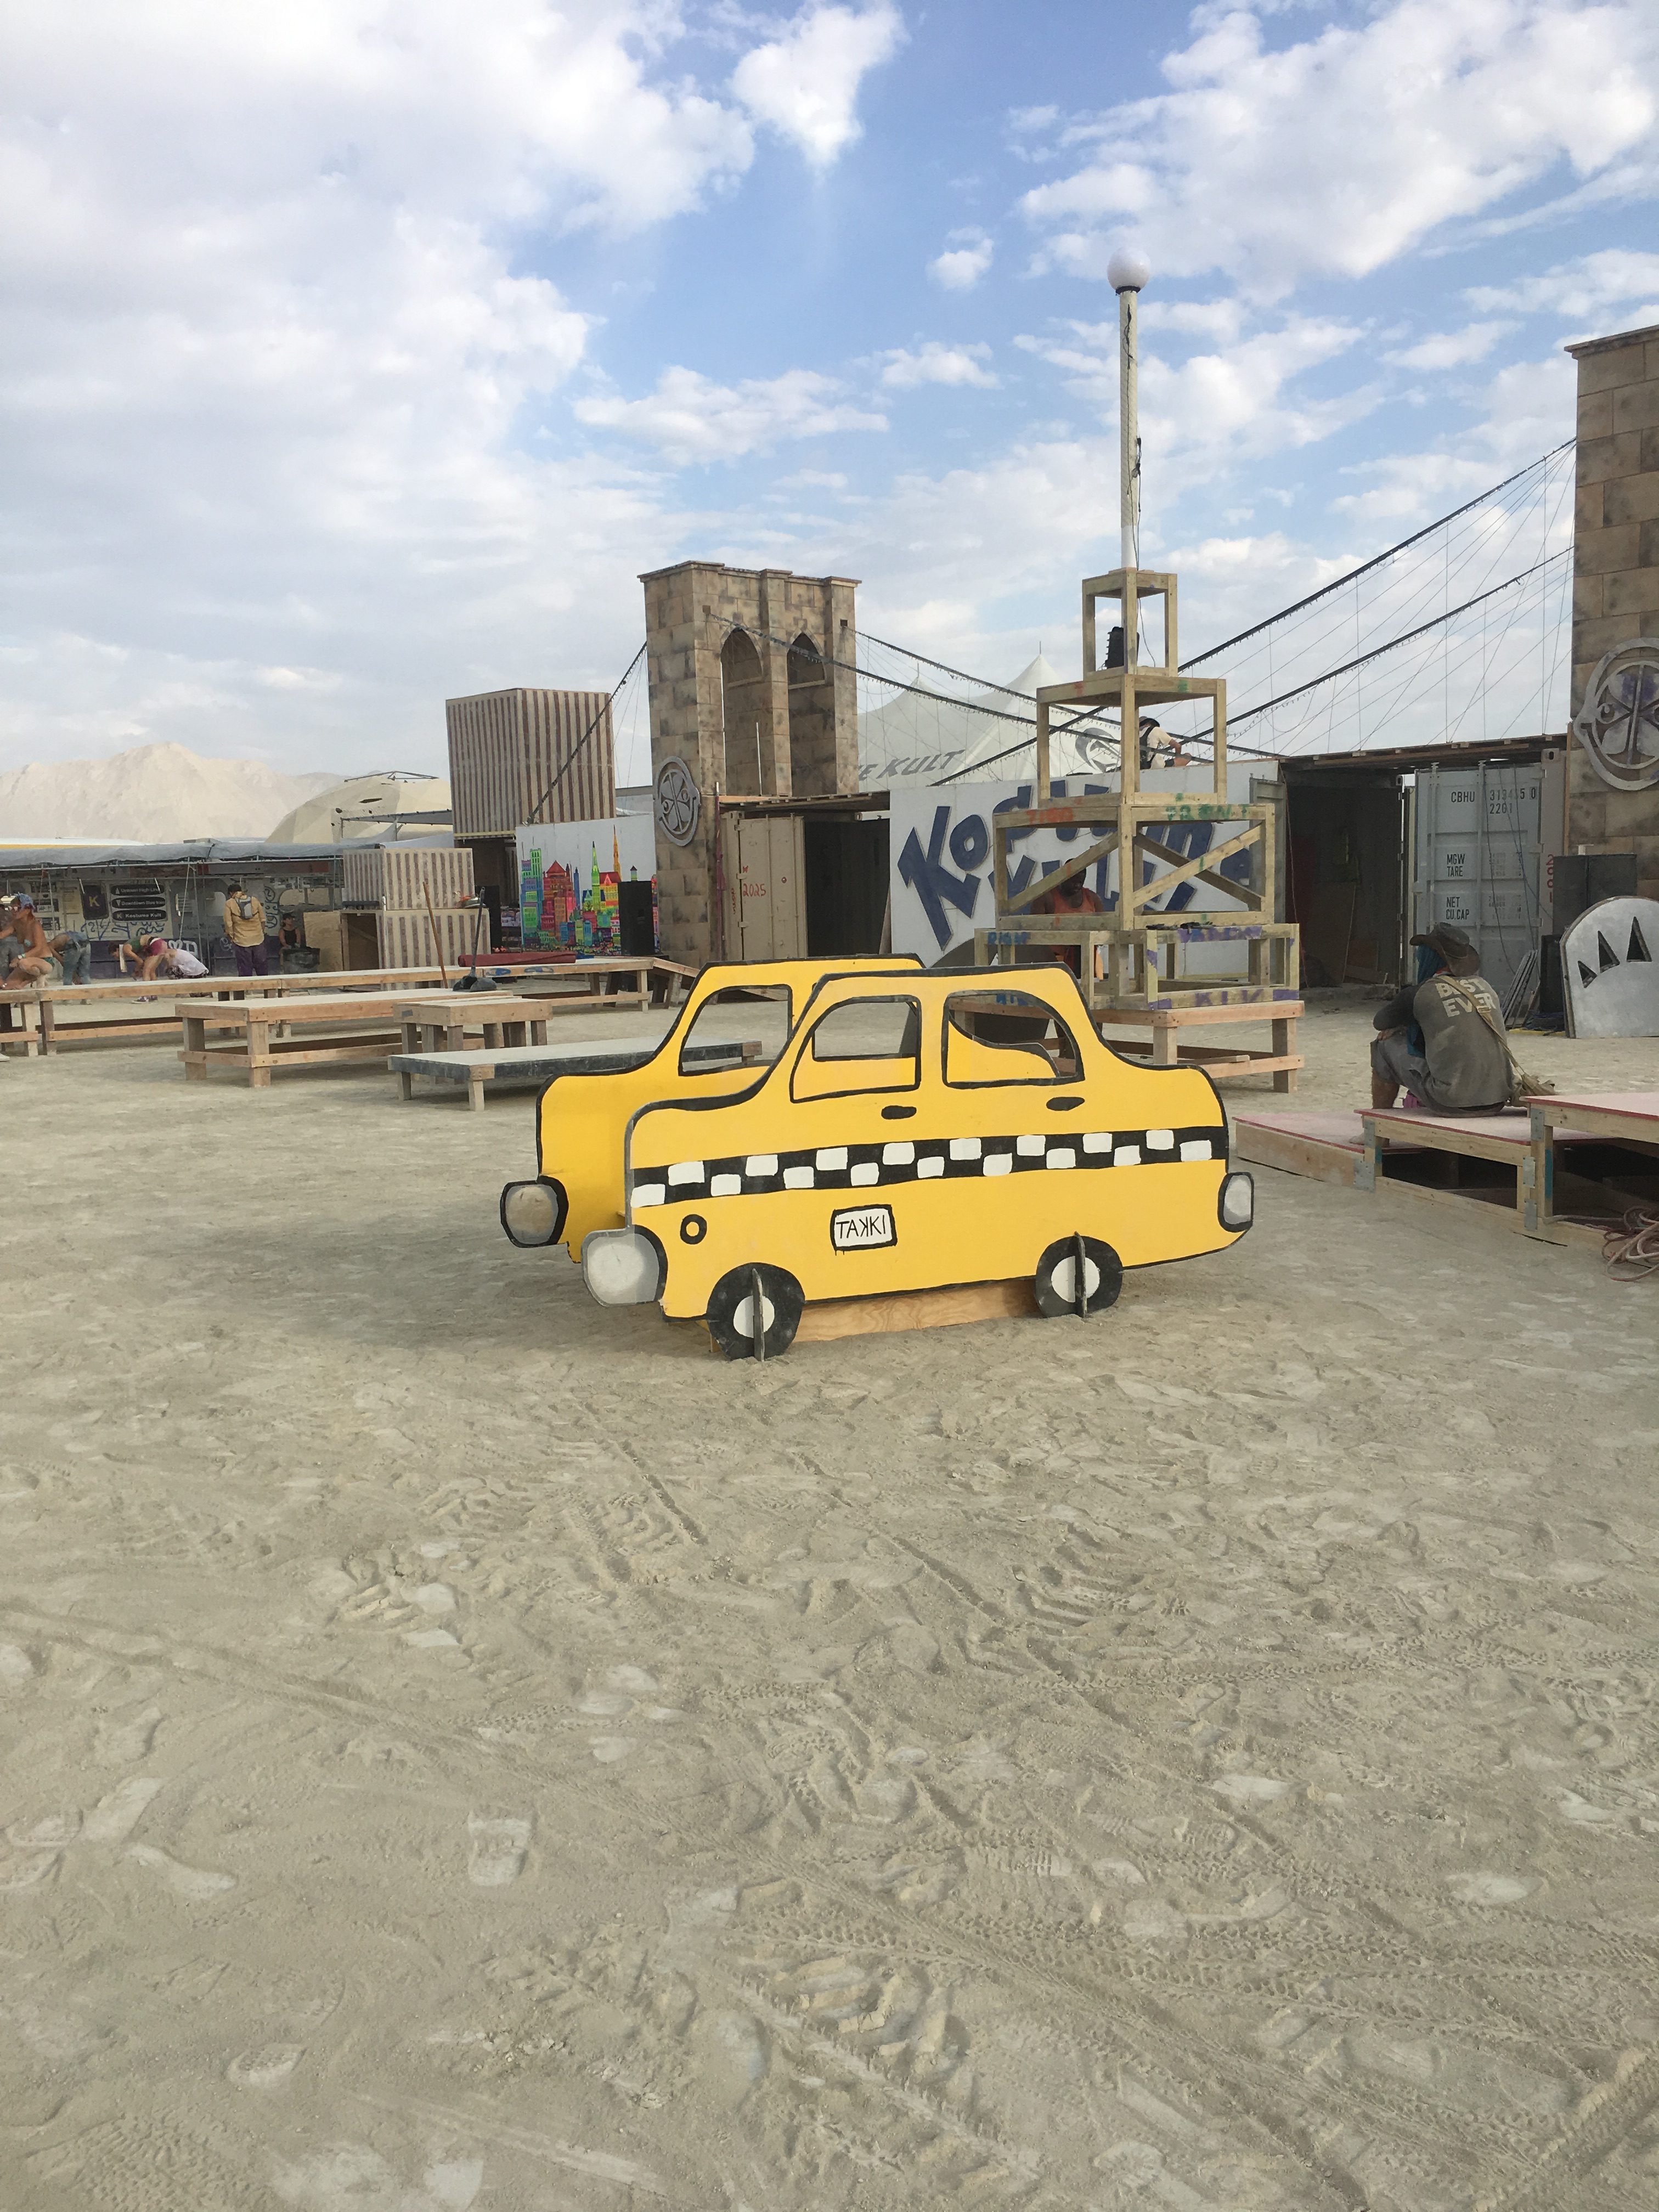 Brooklyn Bridge and Taxis at Burning Man.